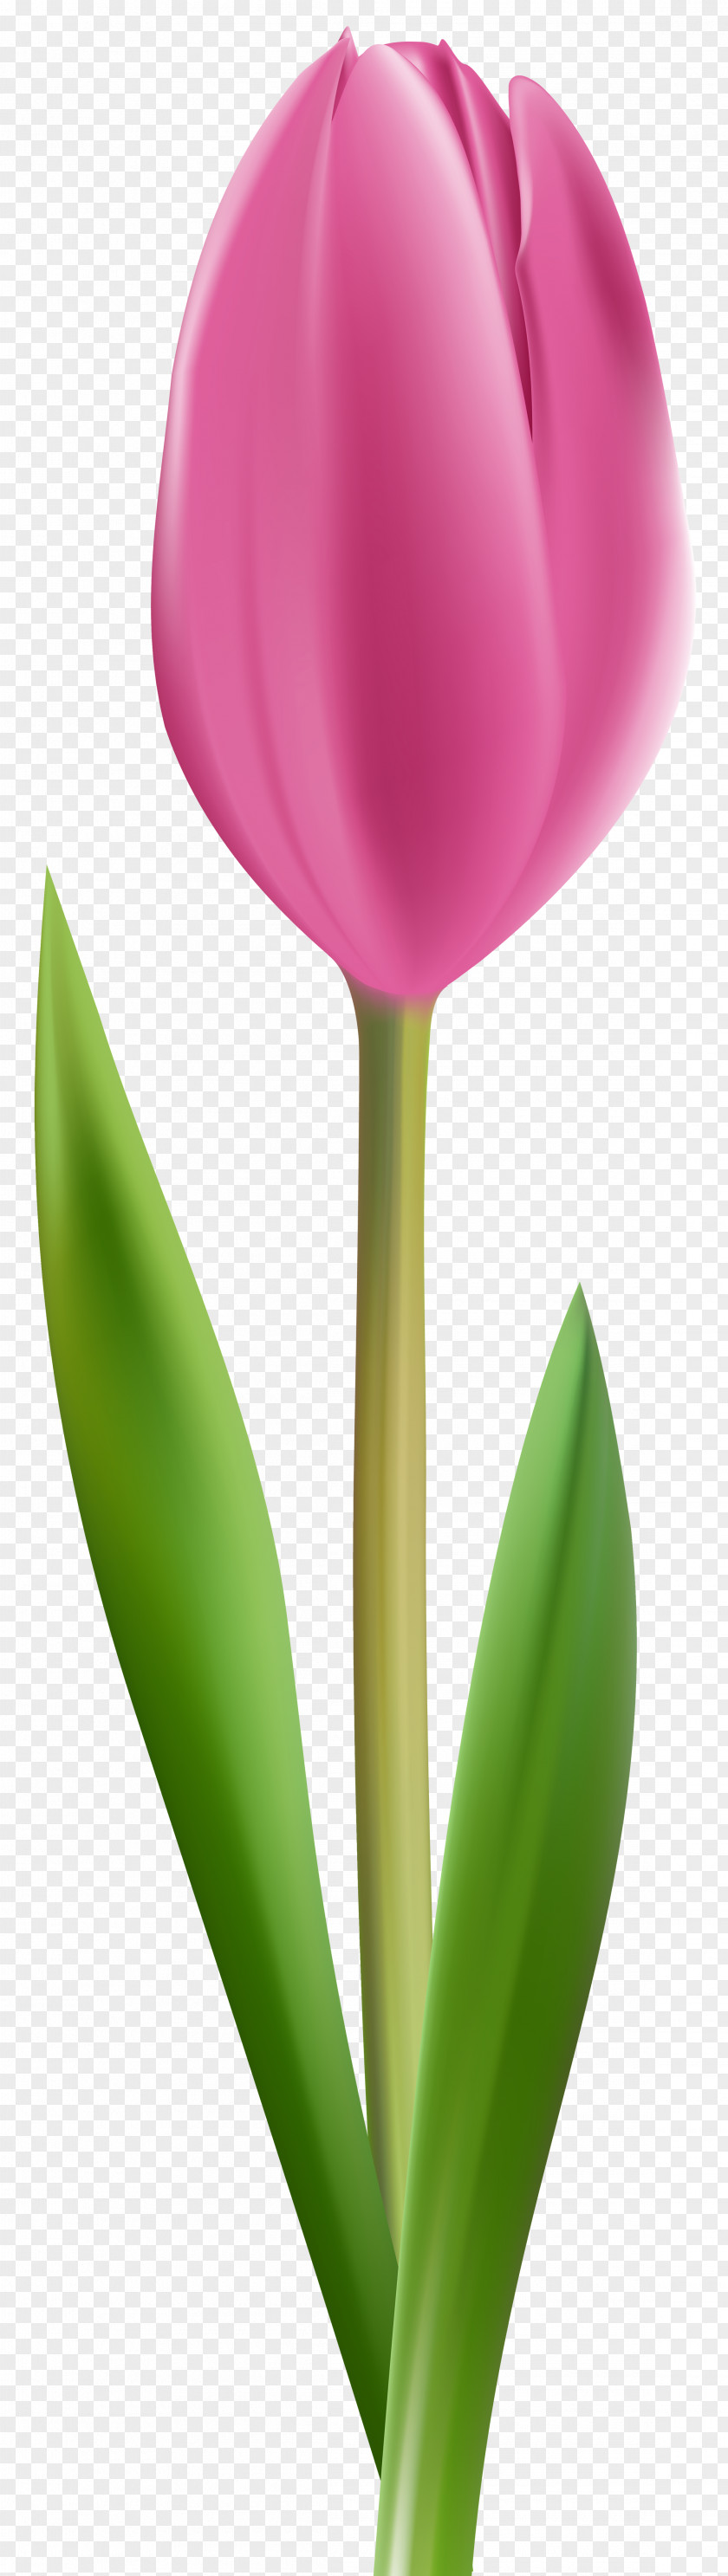 Flower Crown Tulipa Gesneriana Cut Flowers Pink Clip Art PNG